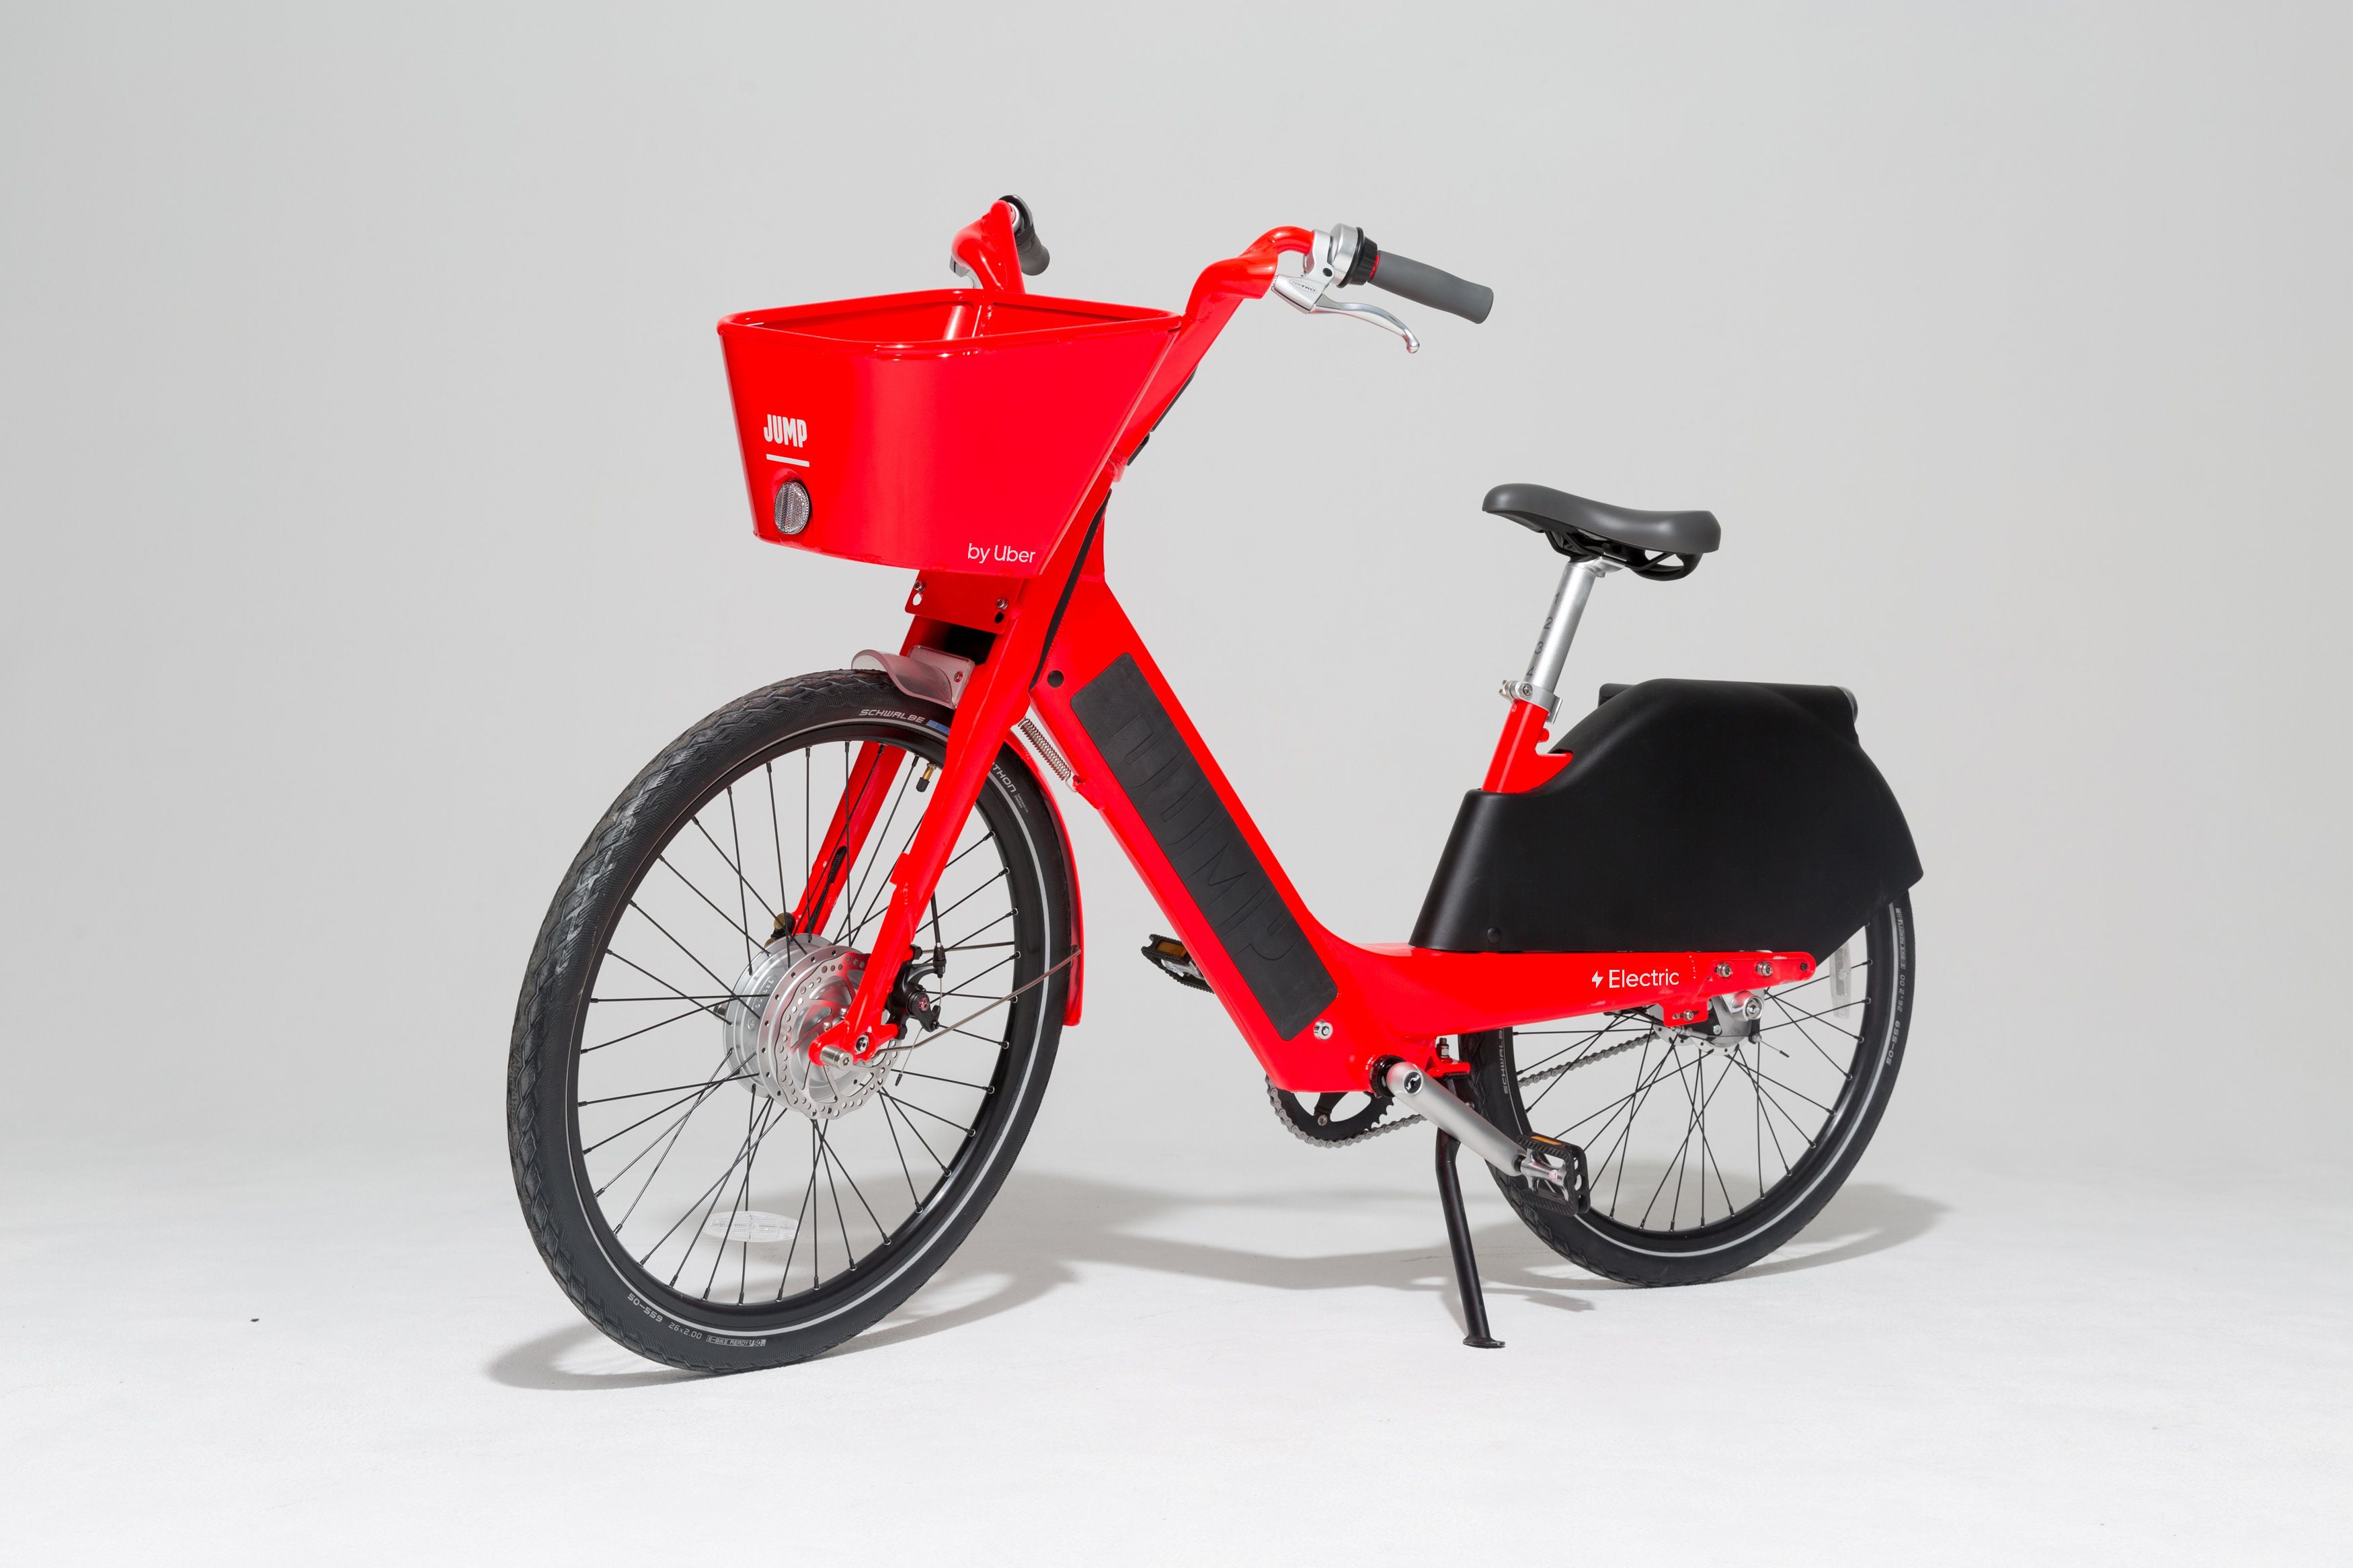 Conveniente horno consonante Las bicicletas de Uber ya están disponibles en Chile - La Tercera